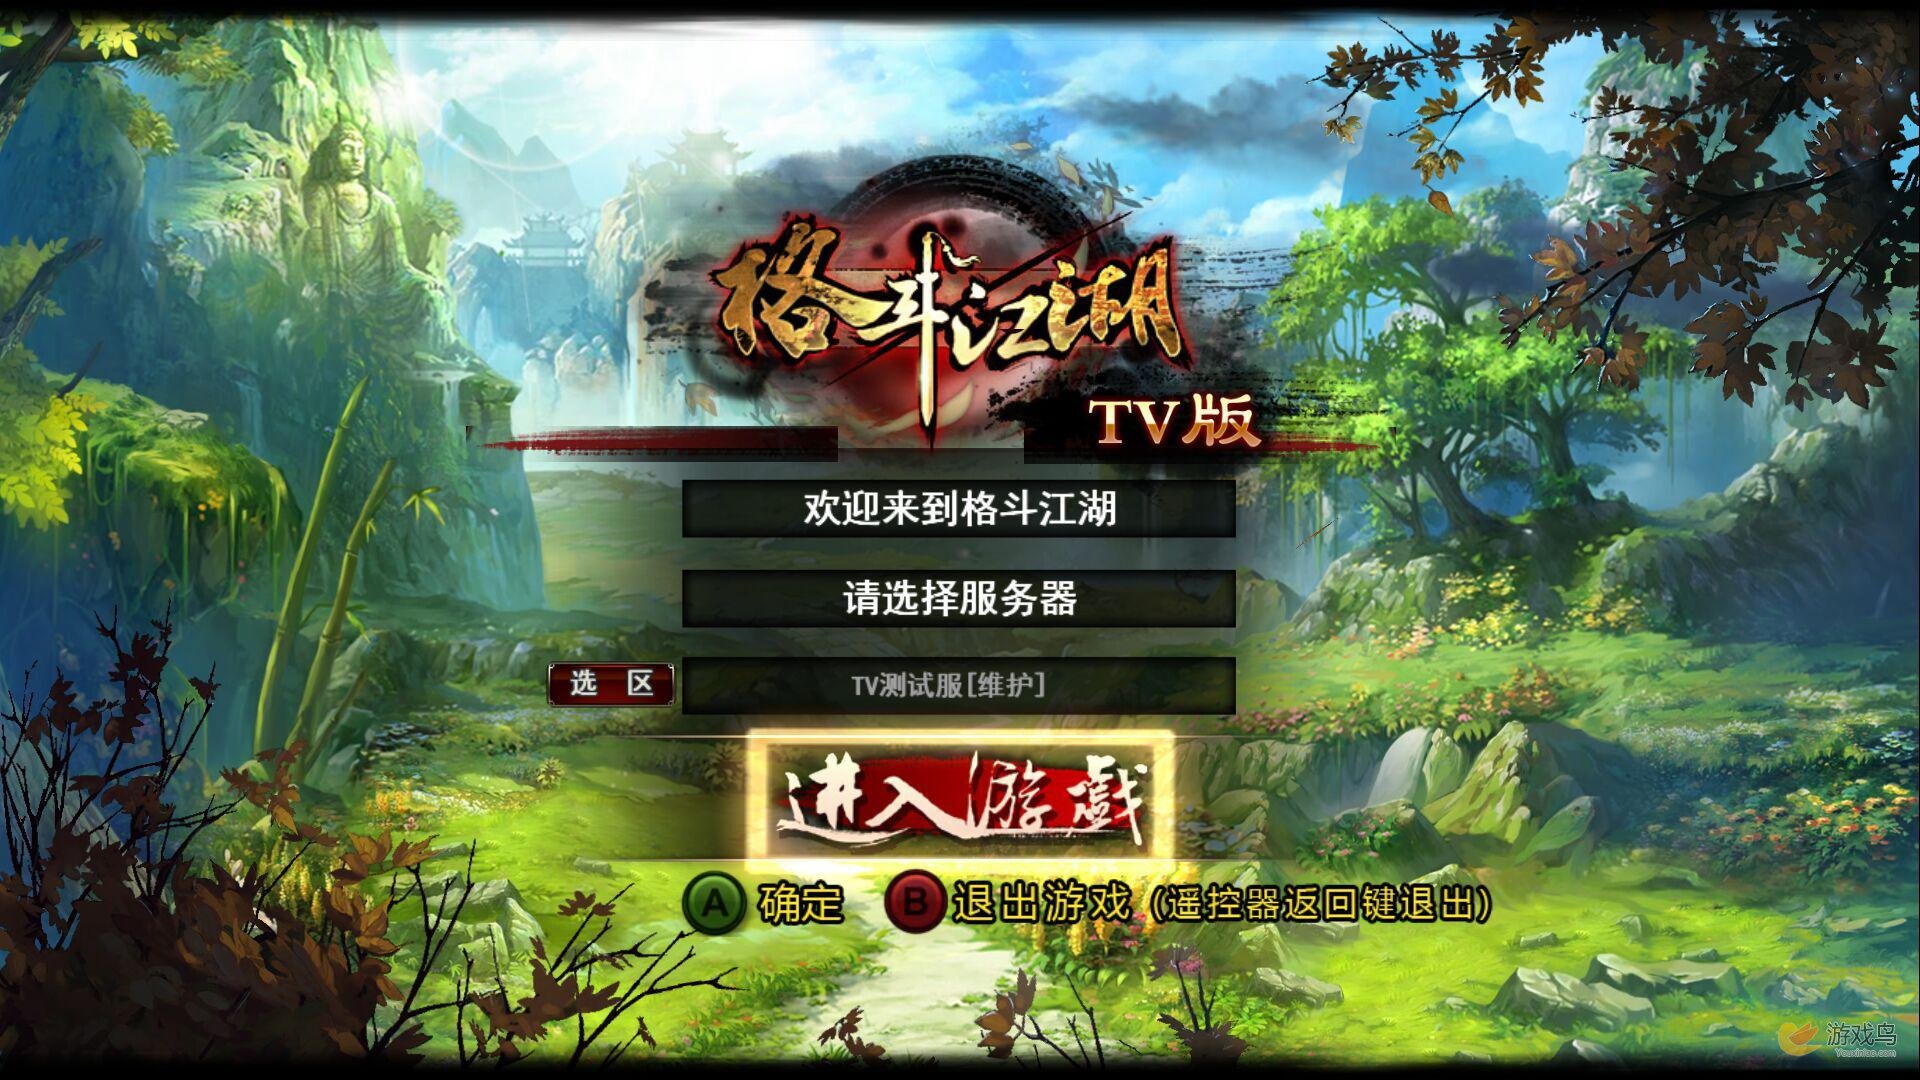 《格斗江湖》今日上线公测 开启TV网游新模式